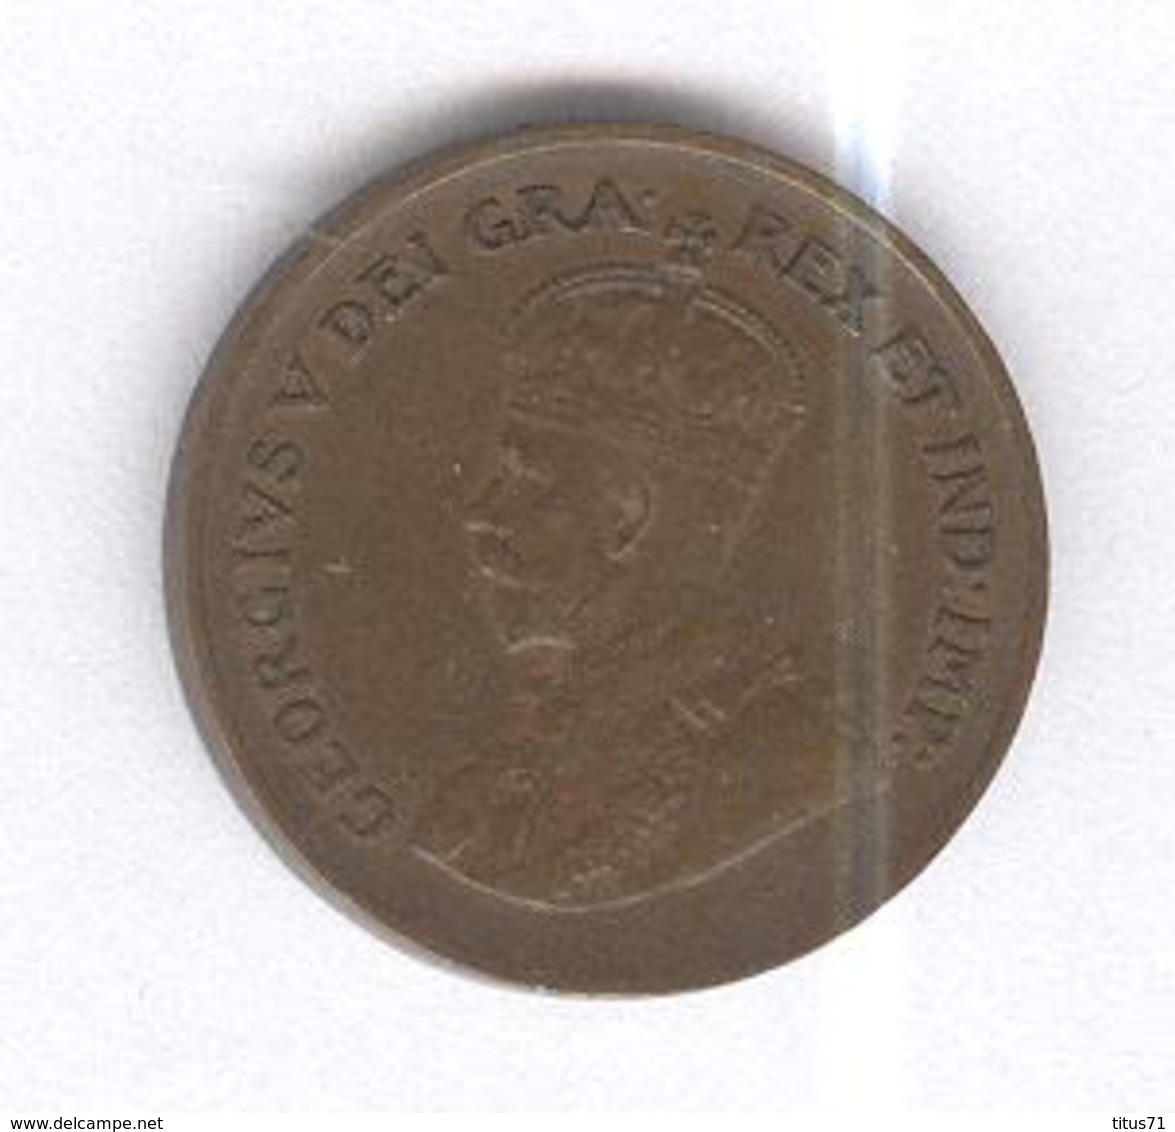 1 Cent Canada 1932 - Canada